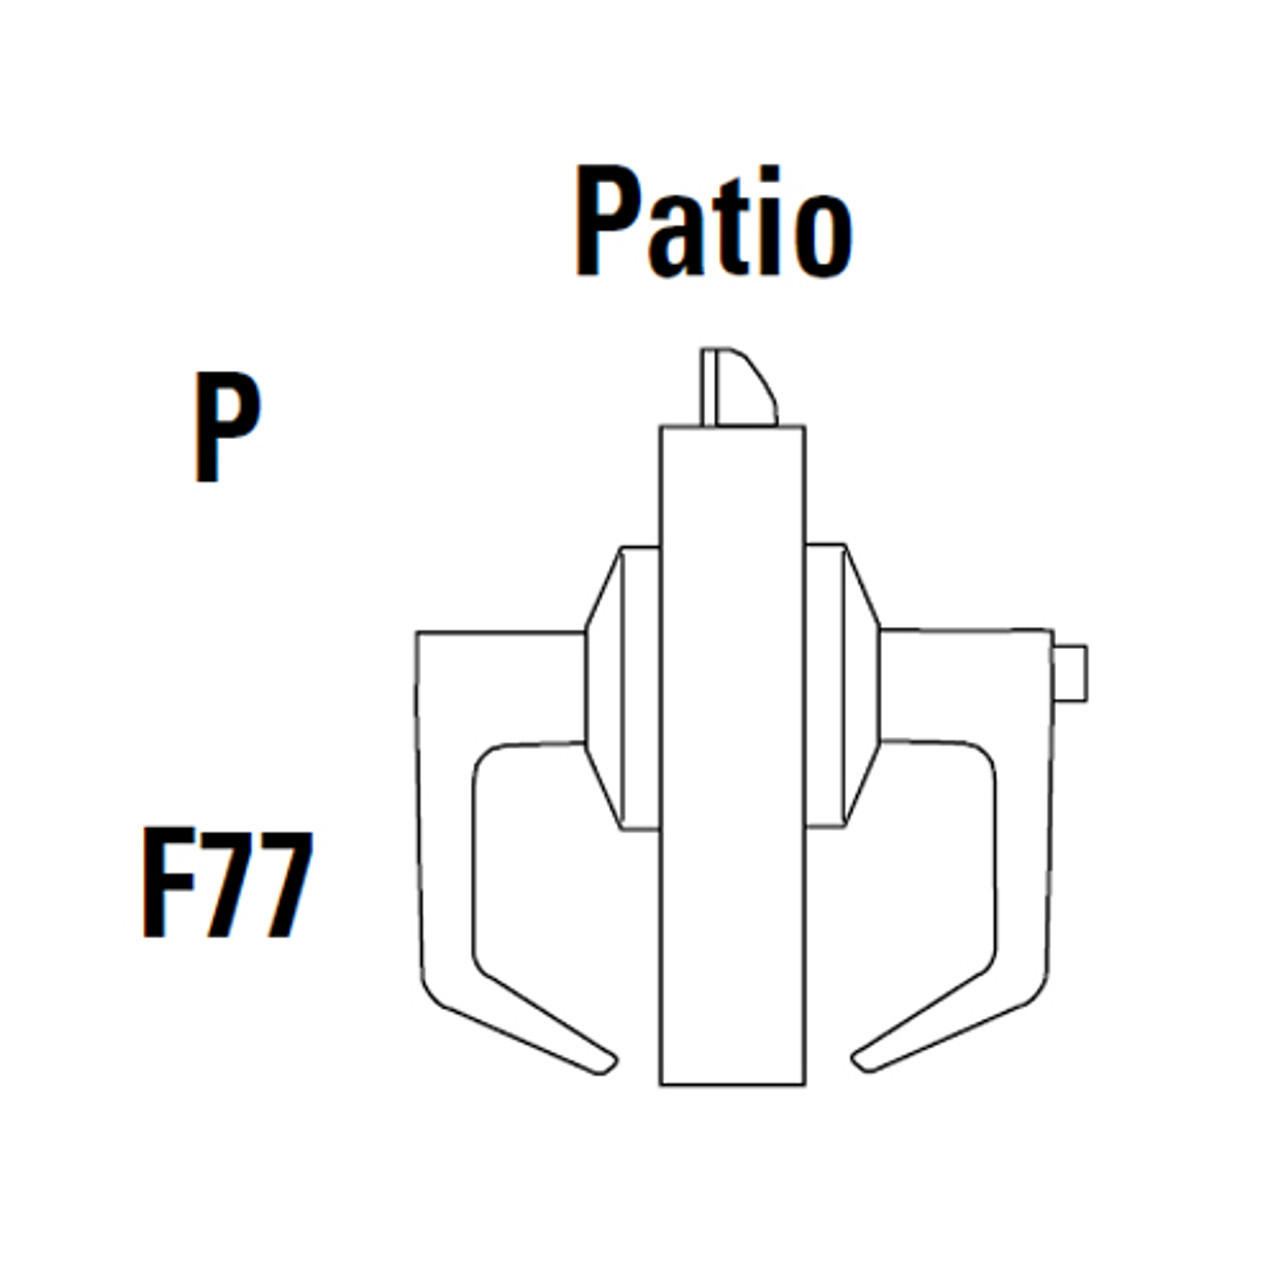 9K30P14LS3690LM Best 9K Series Patio Heavy Duty Cylindrical Lever Locks in Dark Bronze